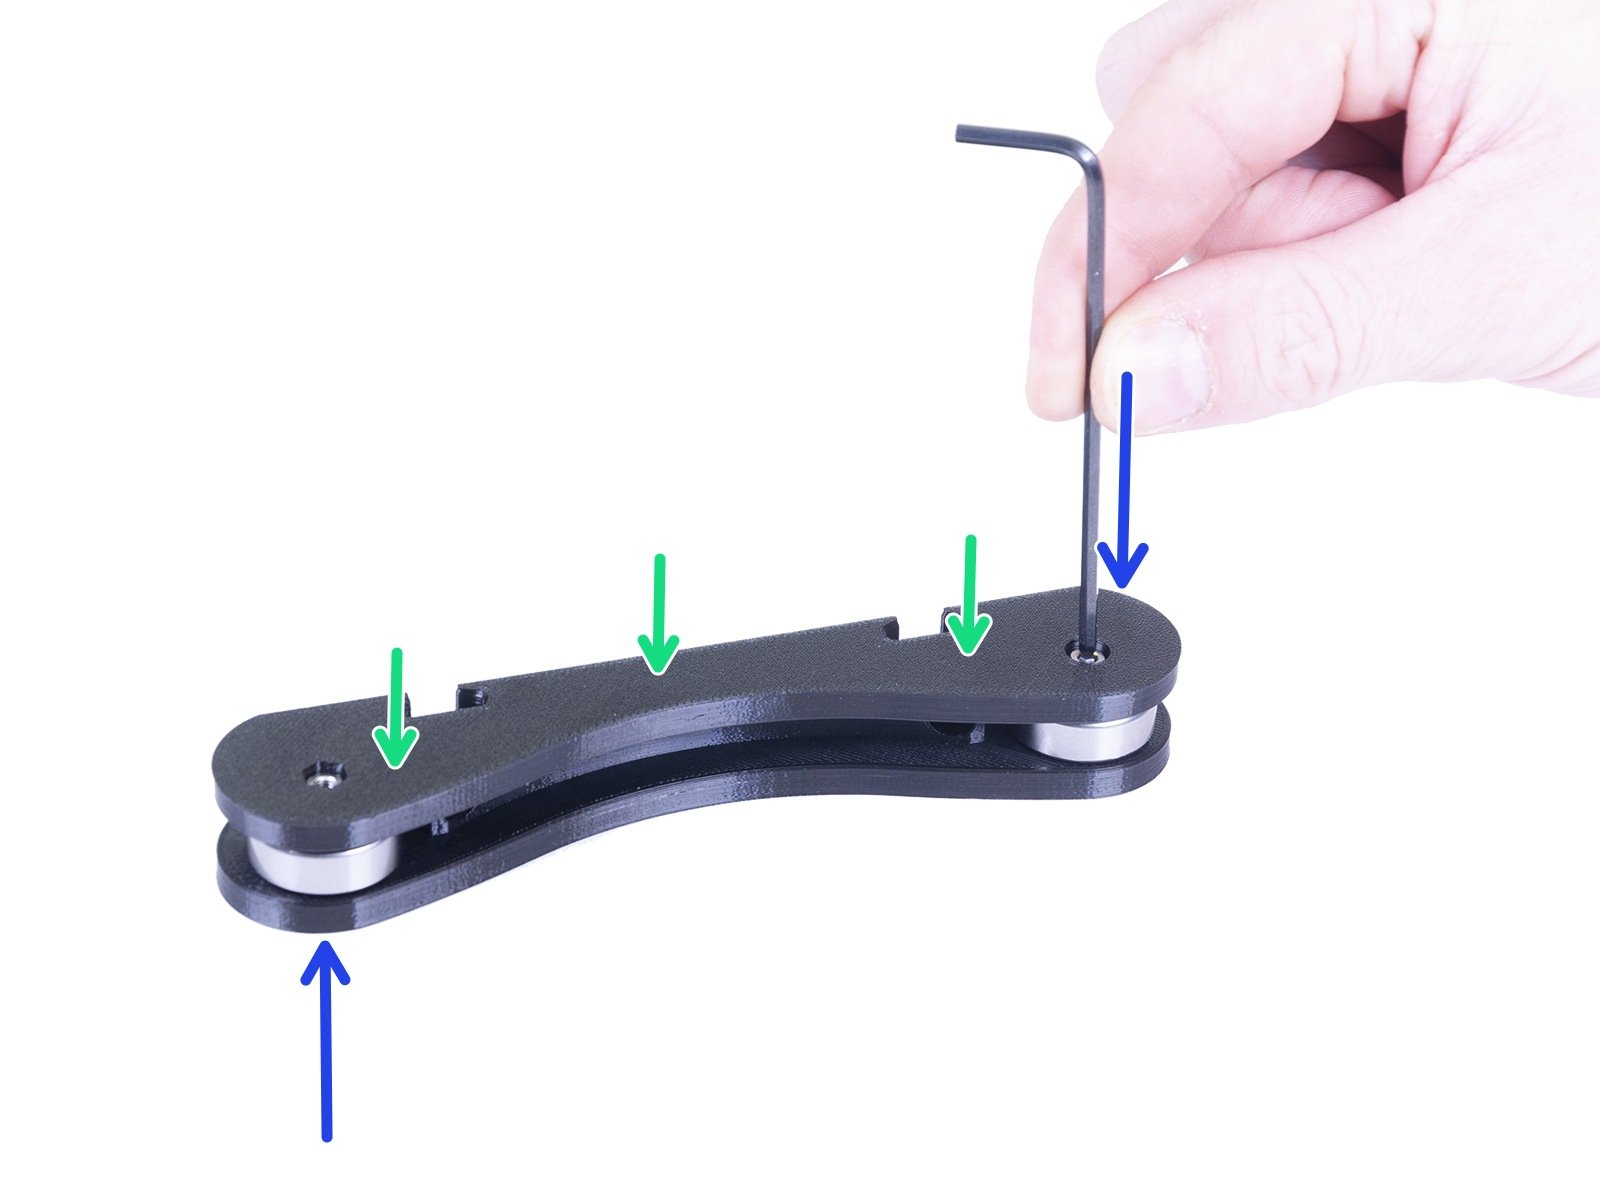 Assembling the spool holder base(s)